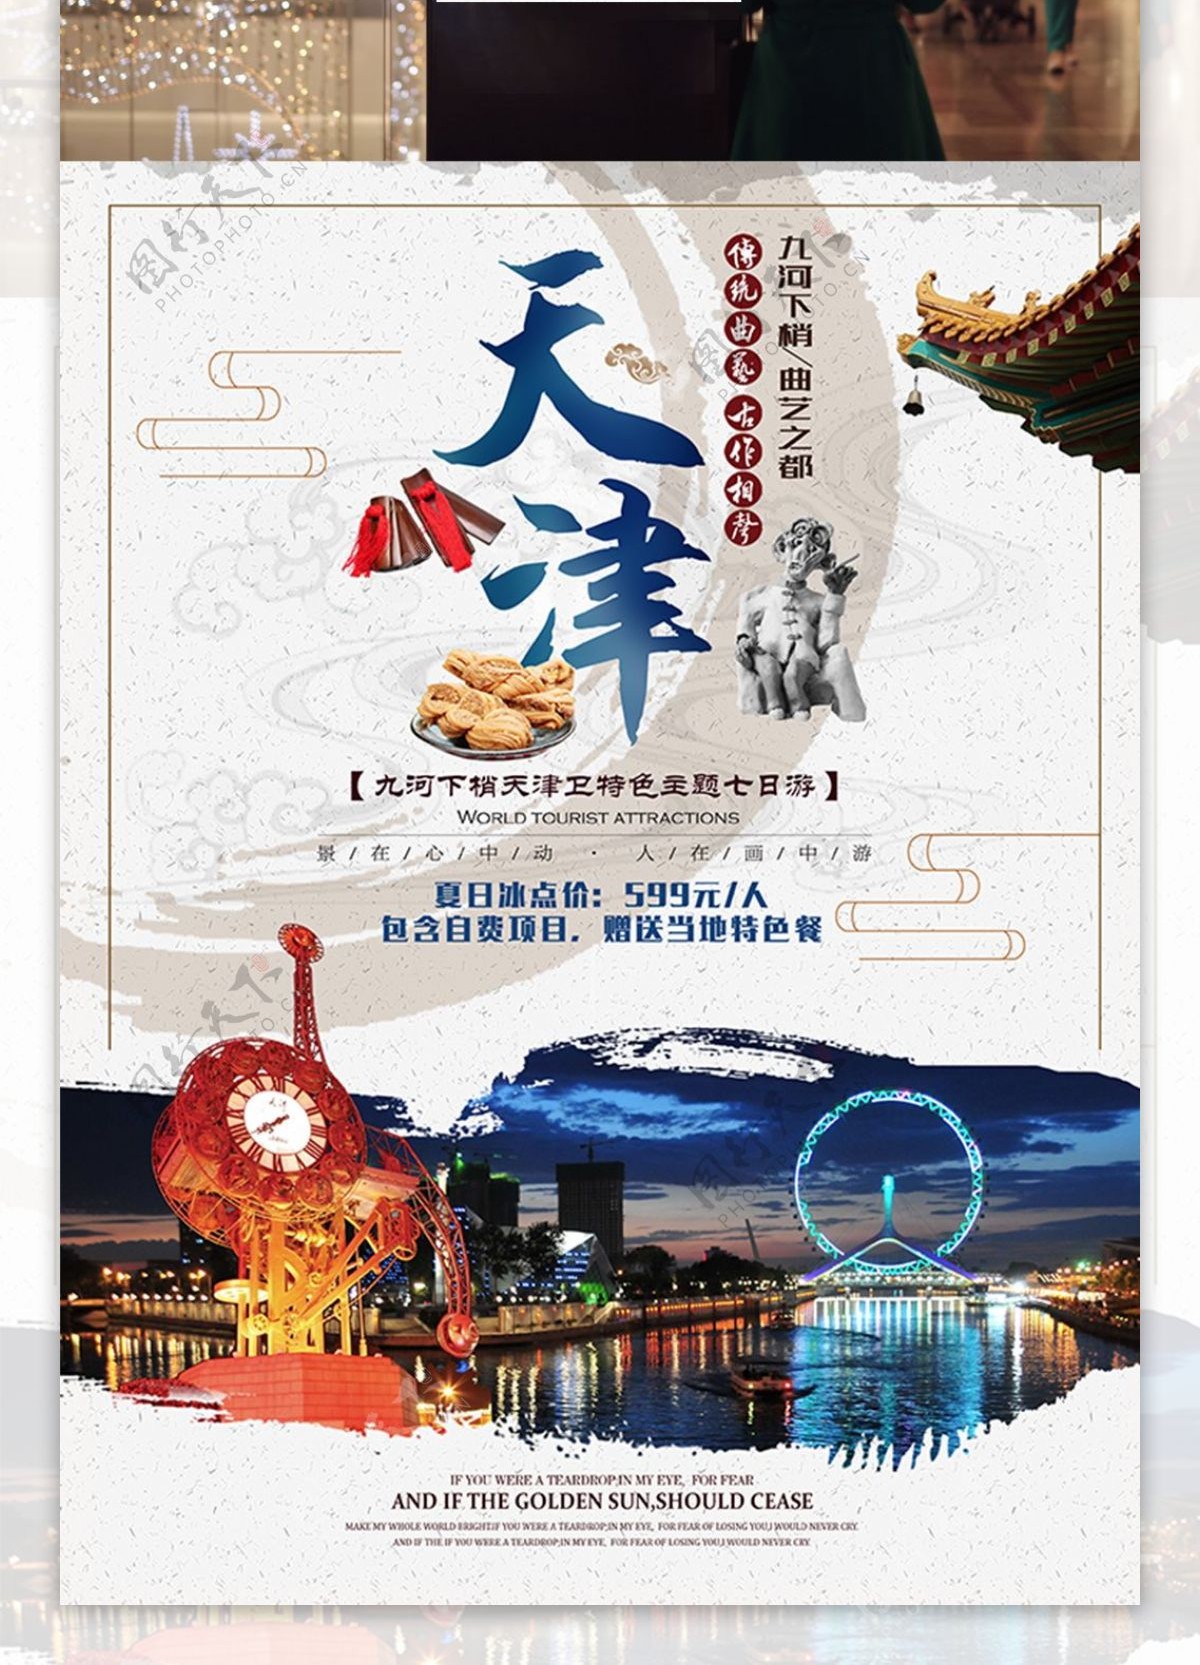 曲艺之乡天津旅游促销海报